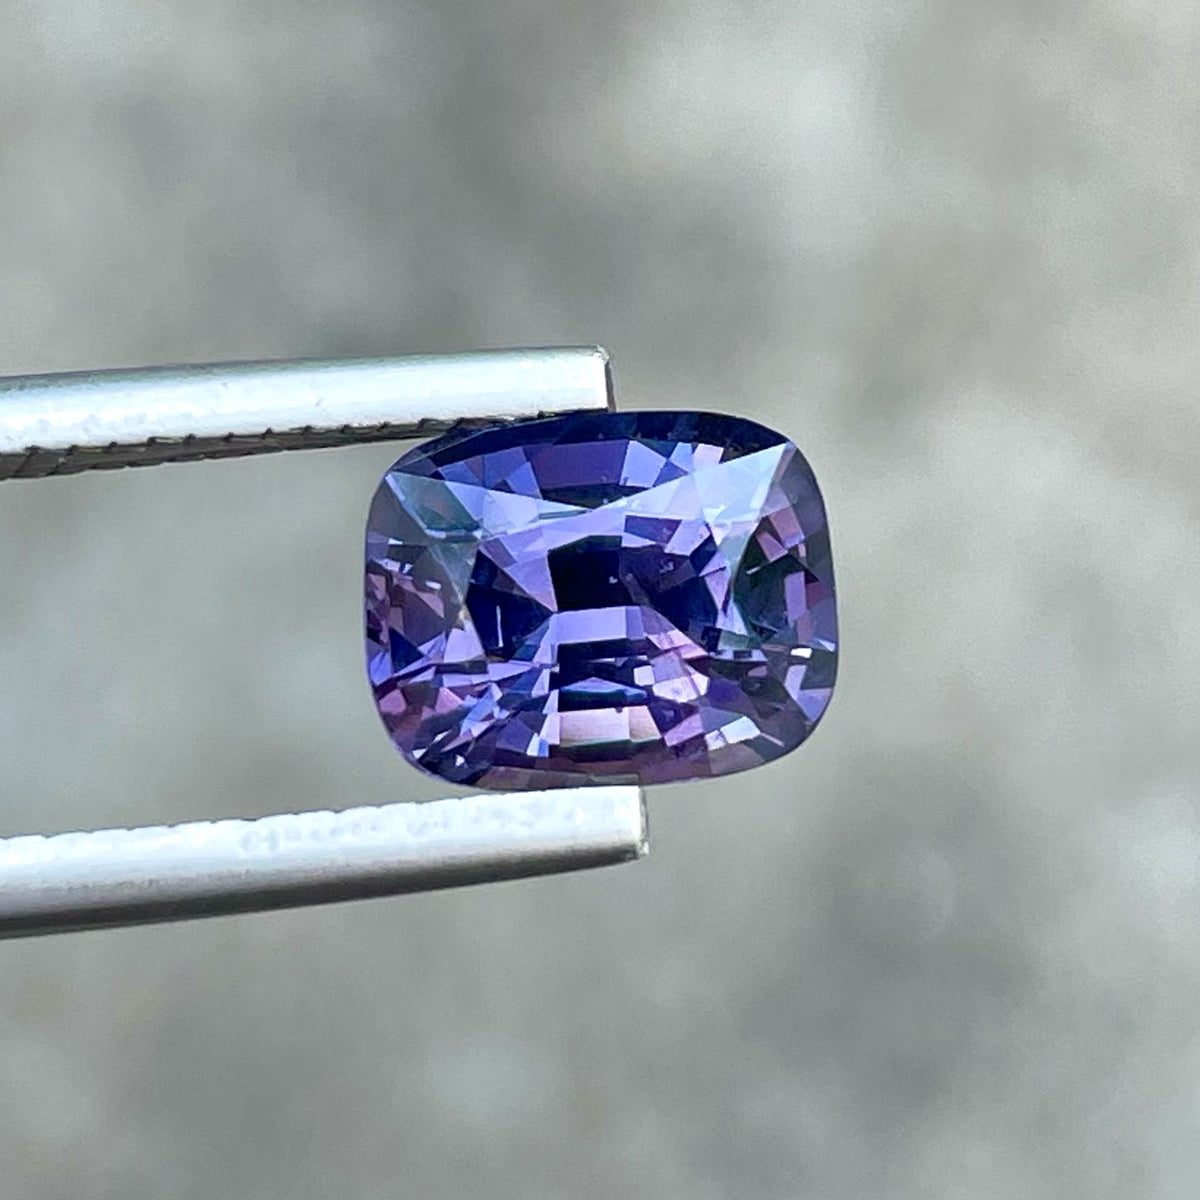 Exquisite Natural Violet Color Spinel Gemstone